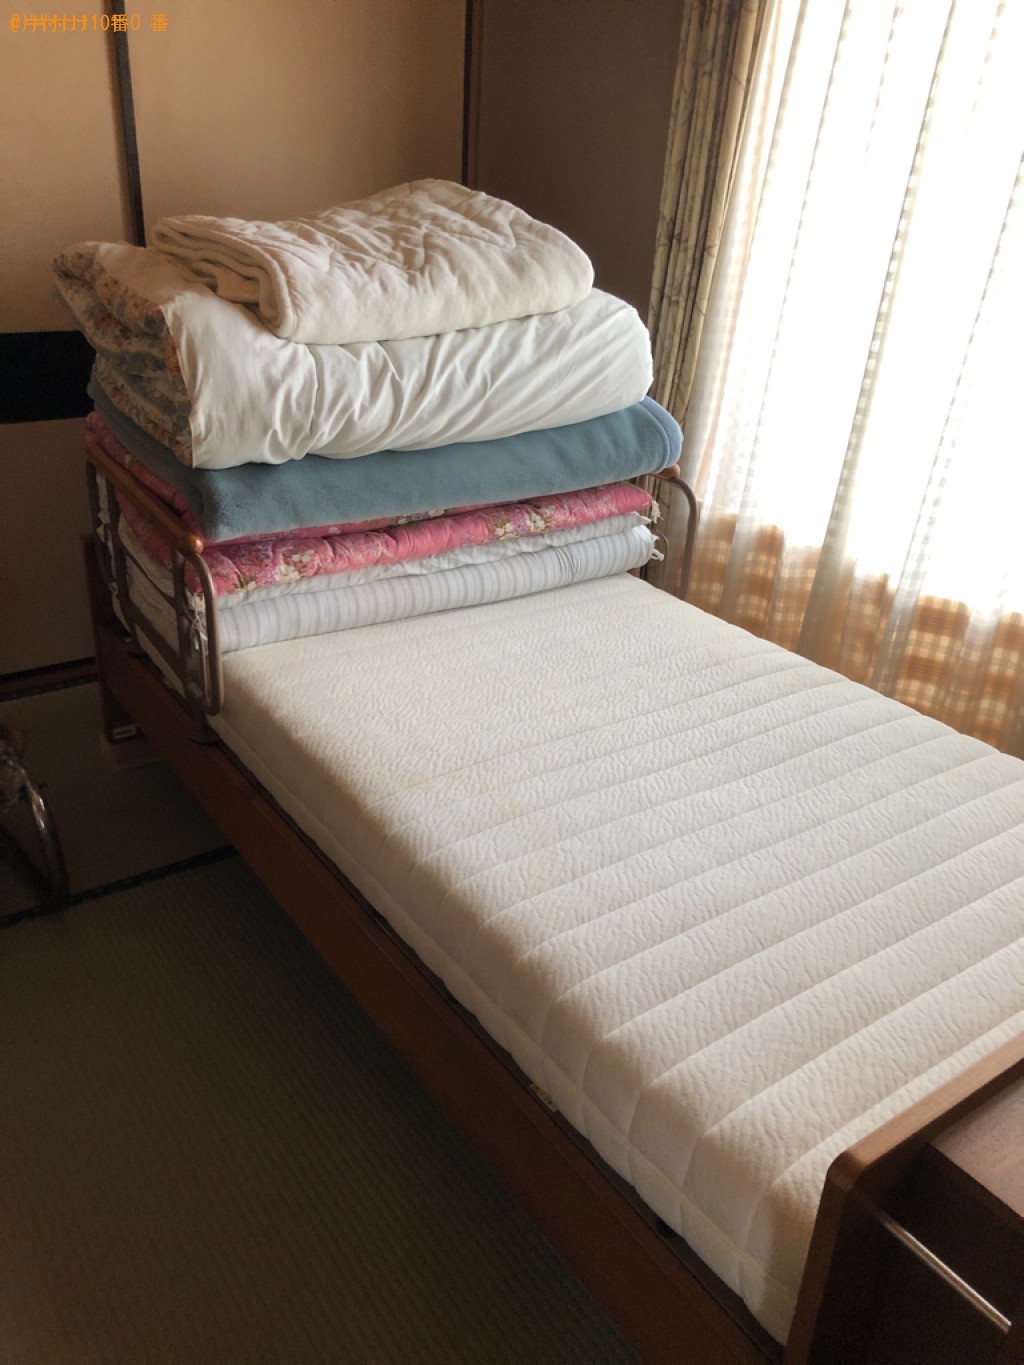 【福岡市南区】シングルベッドの出張不用品回収・処分ご依頼